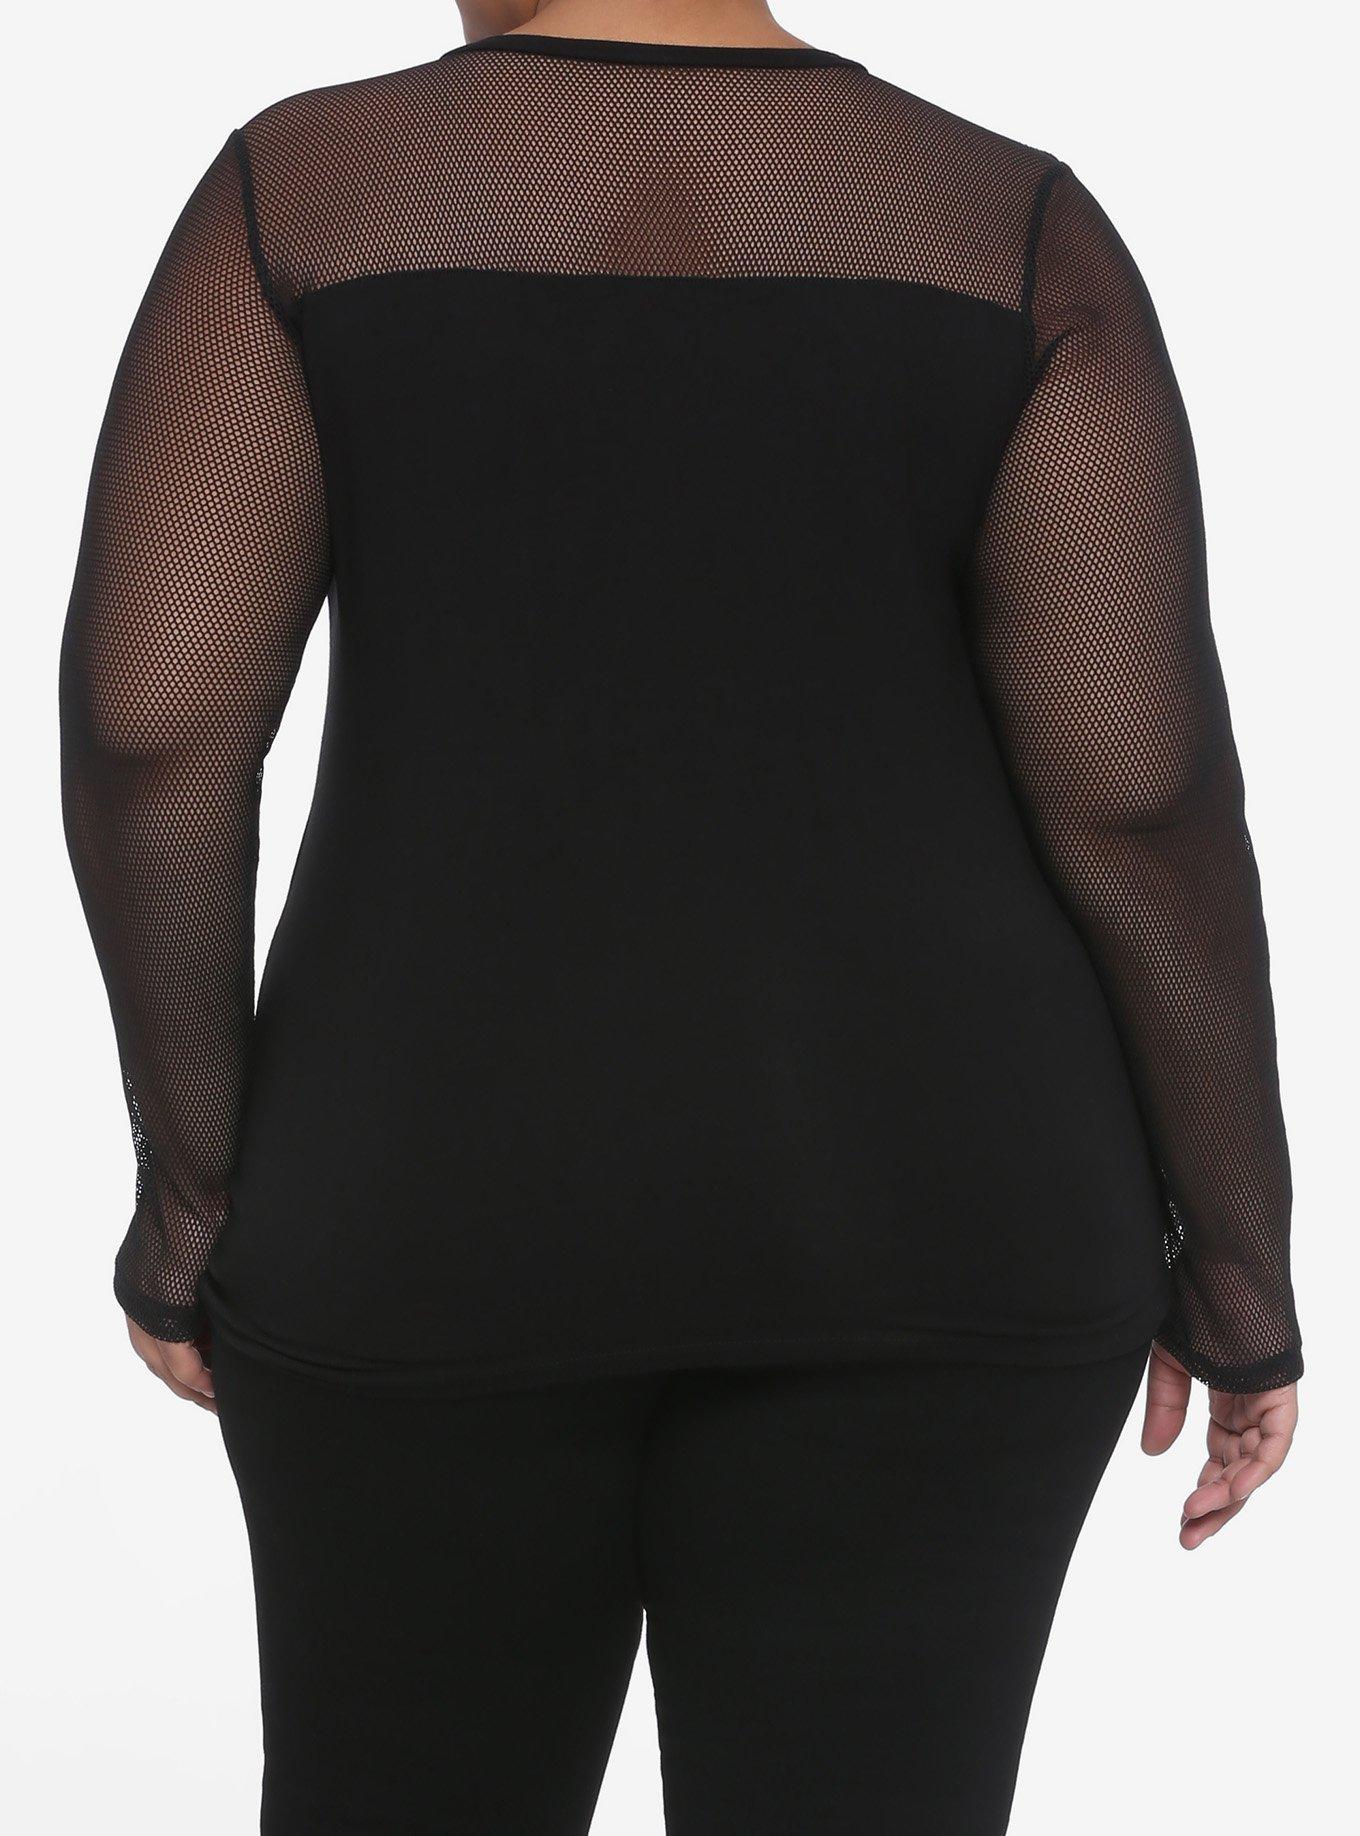 Black Mesh & Panels Long-Sleeve T-Shirt Plus Size, BLACK, alternate